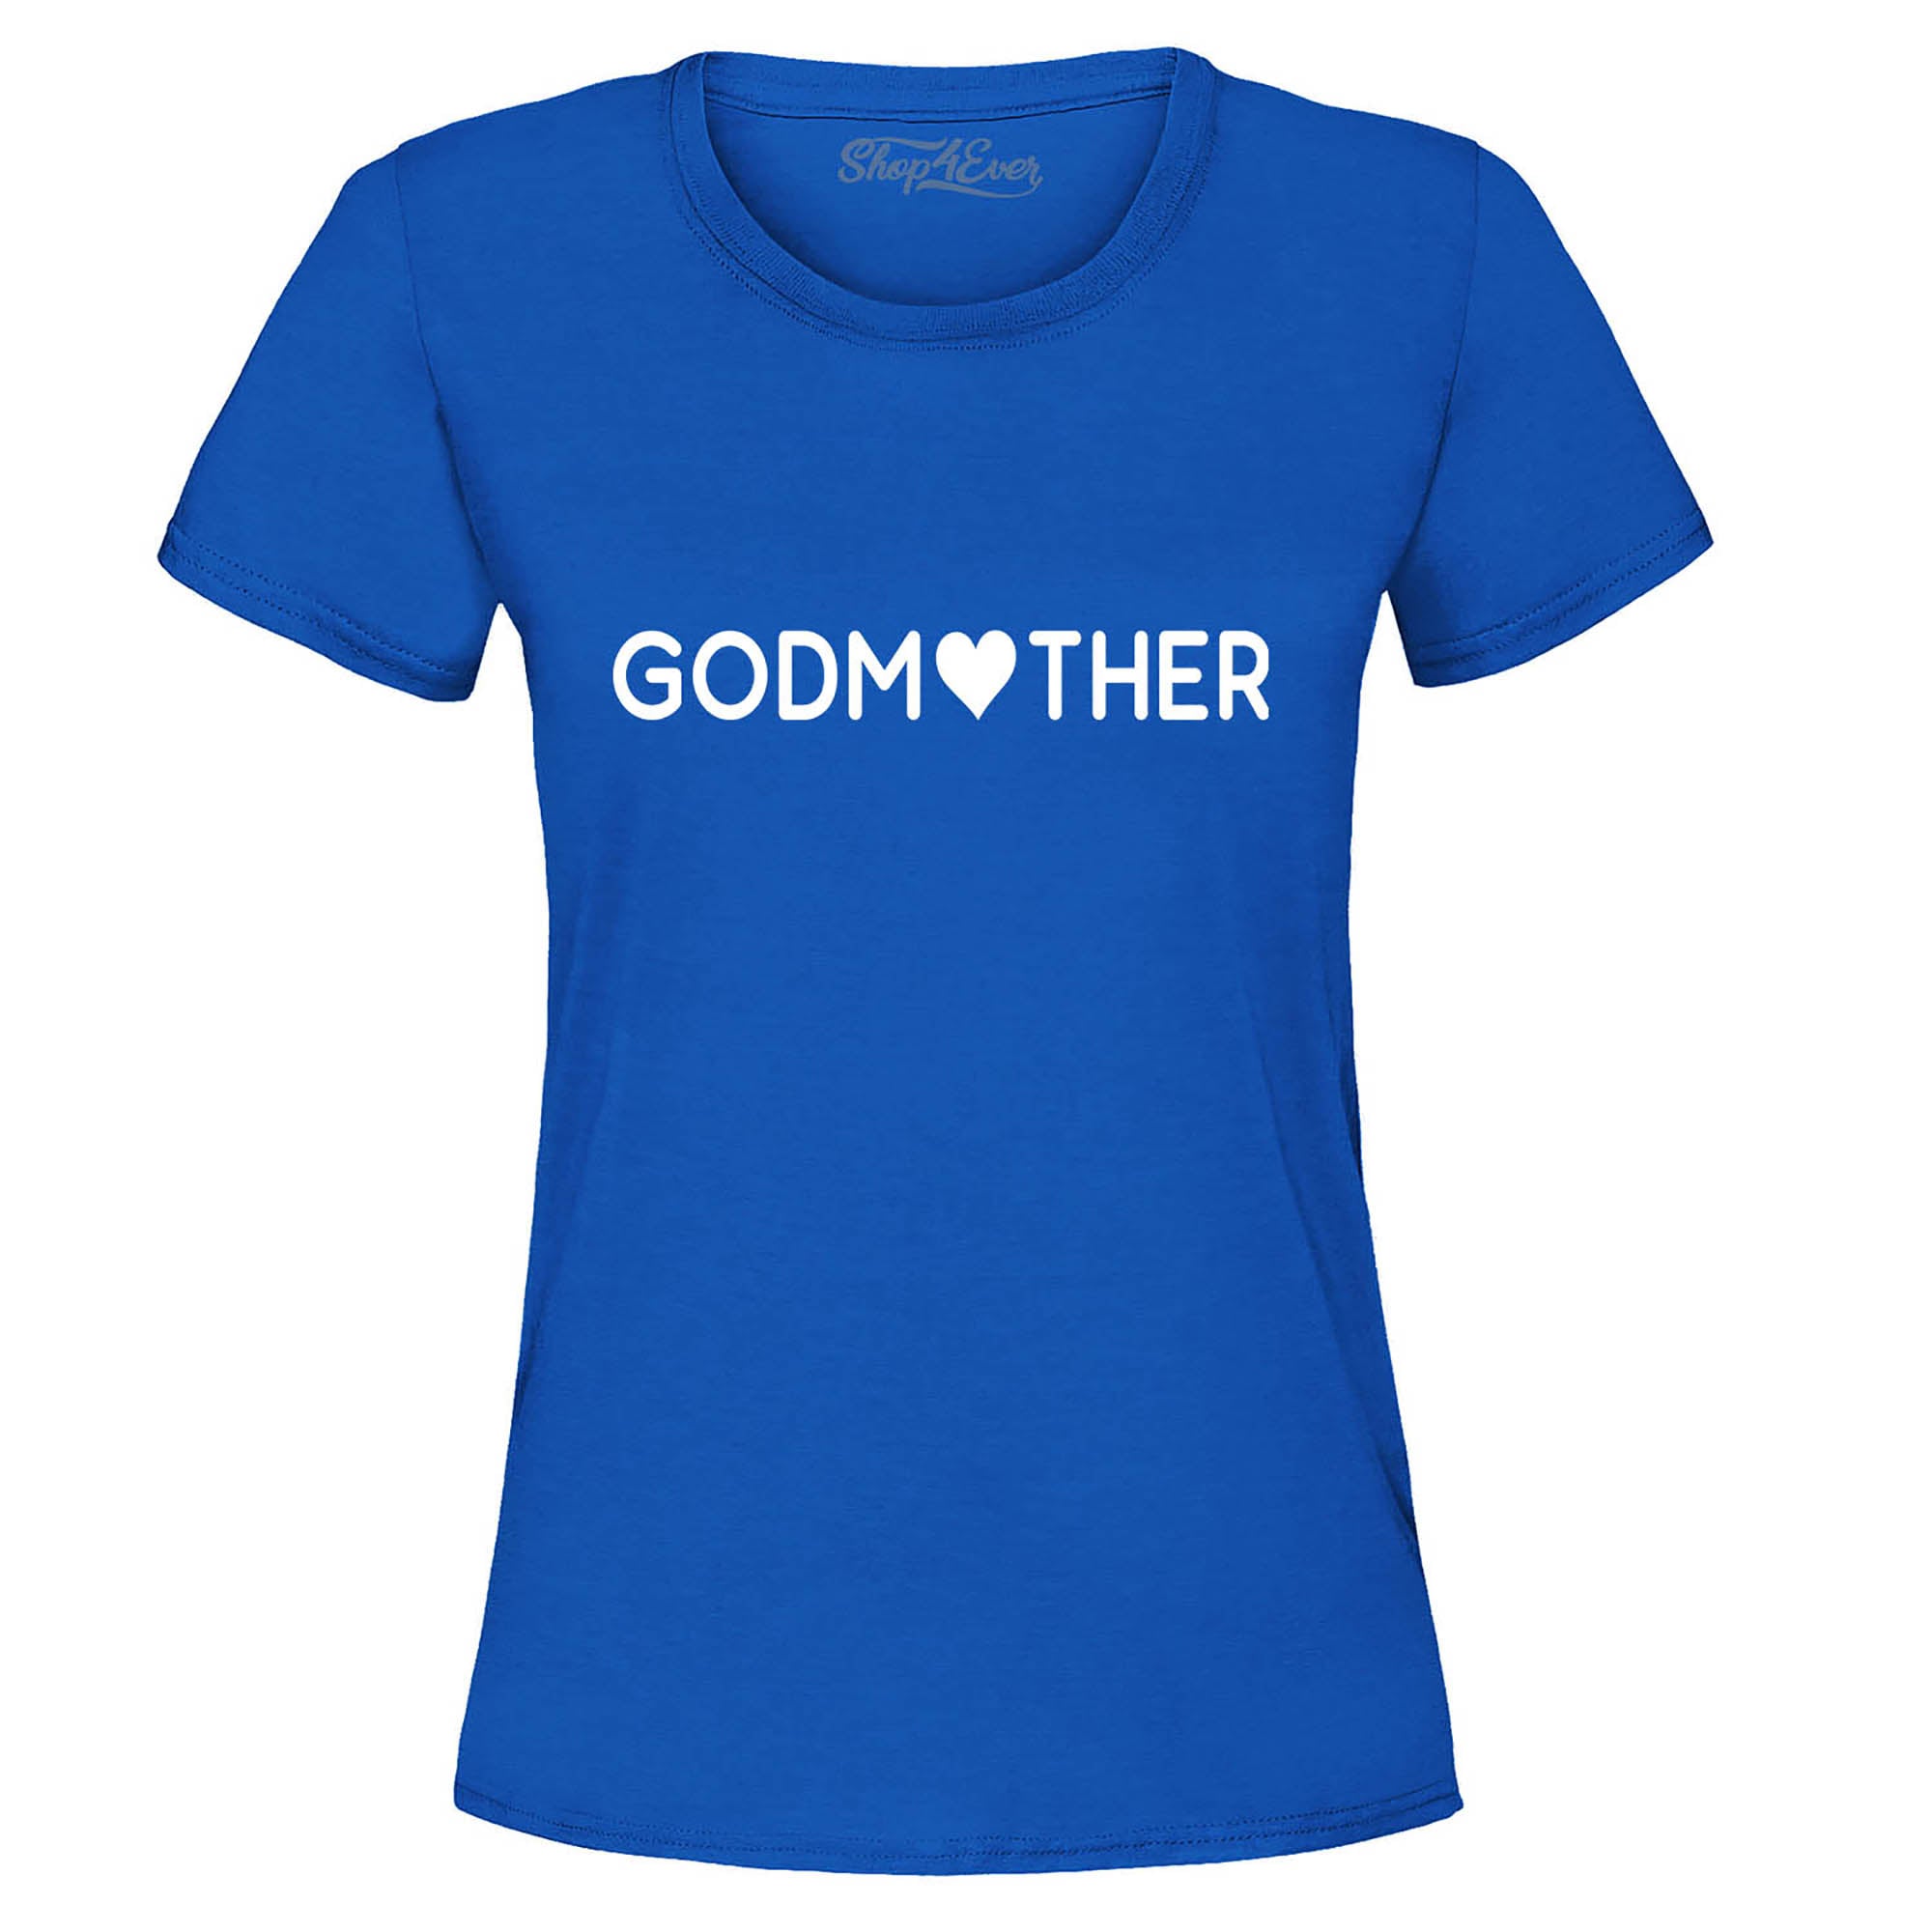 Godmother Women's T-Shirt